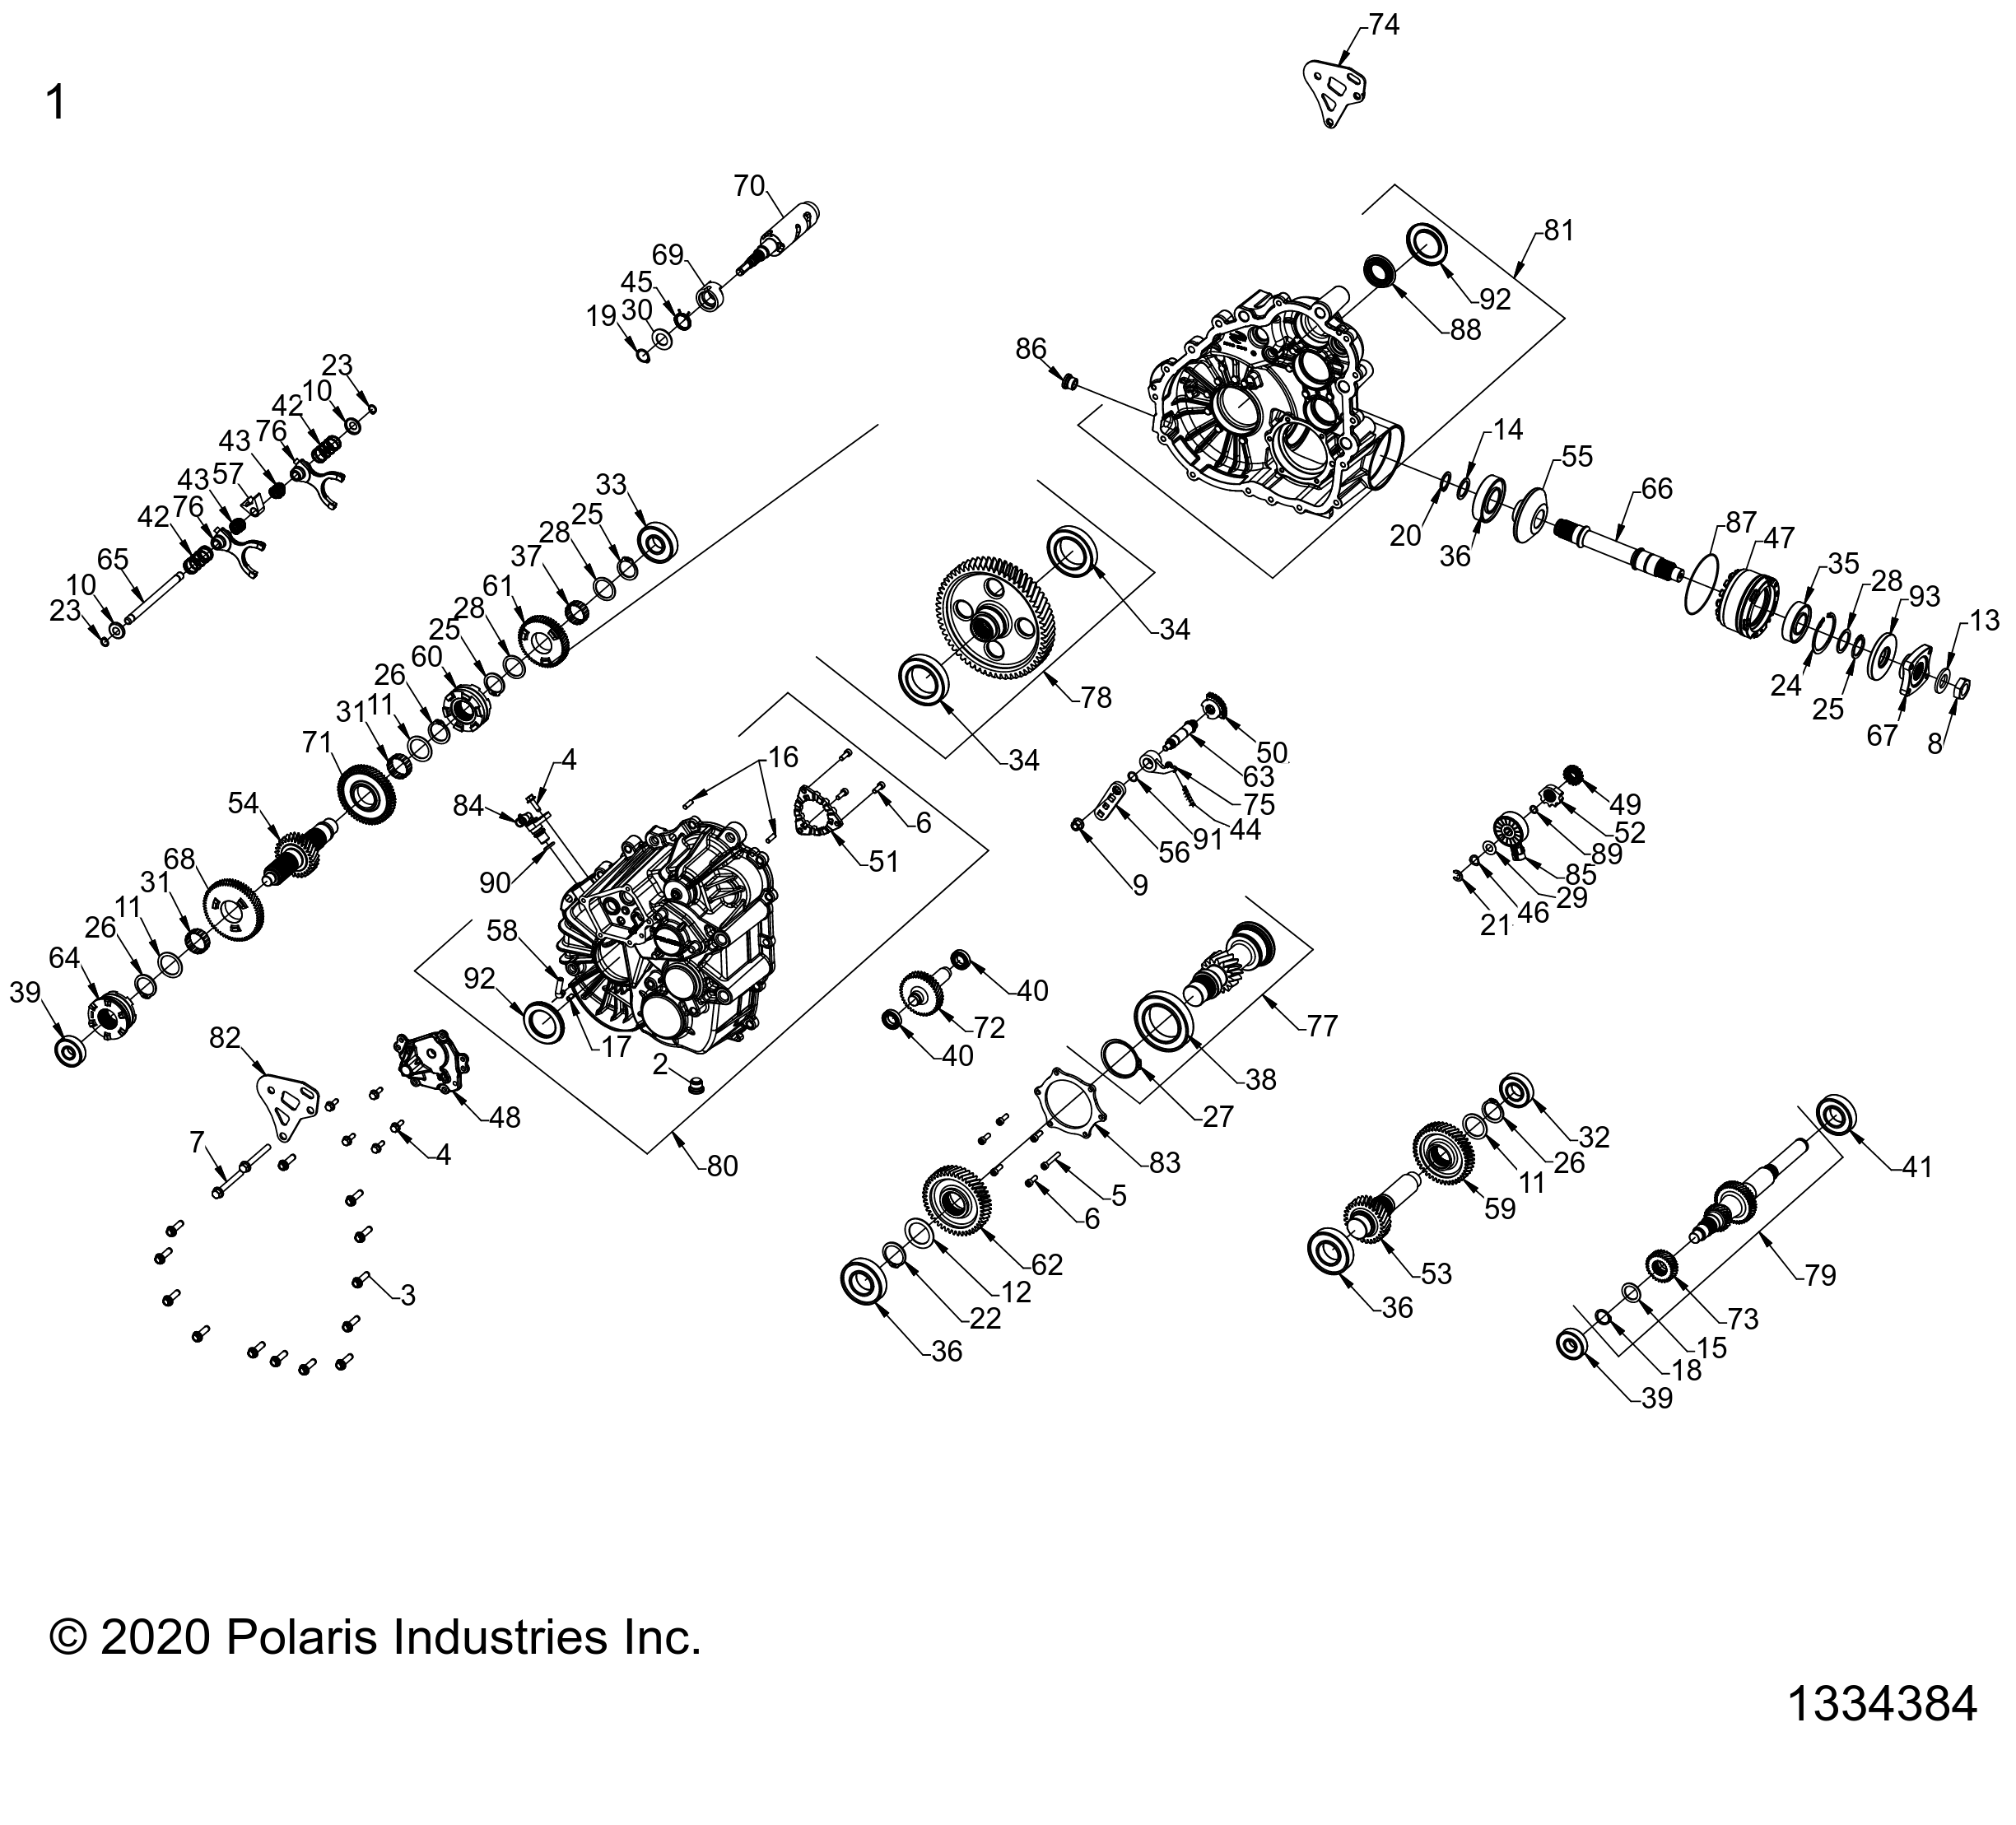 Foto diagrama Polaris que contem a peça 3235992